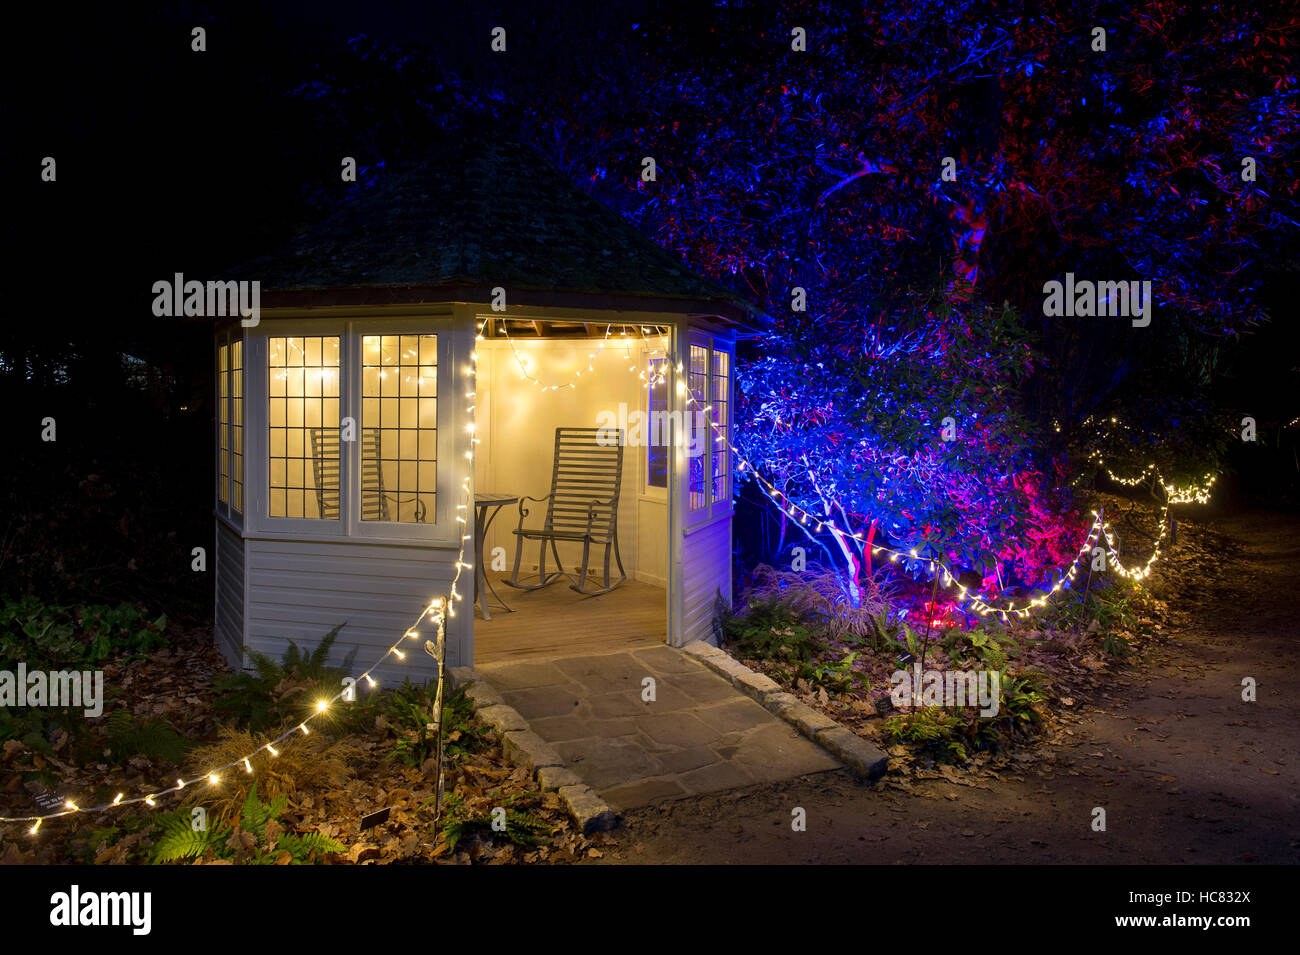 Weihnachtsbeleuchtung in RHS Wisley Gardens, Surrey, England. Weihnachten Leuchten Festival 2016 Stockfoto